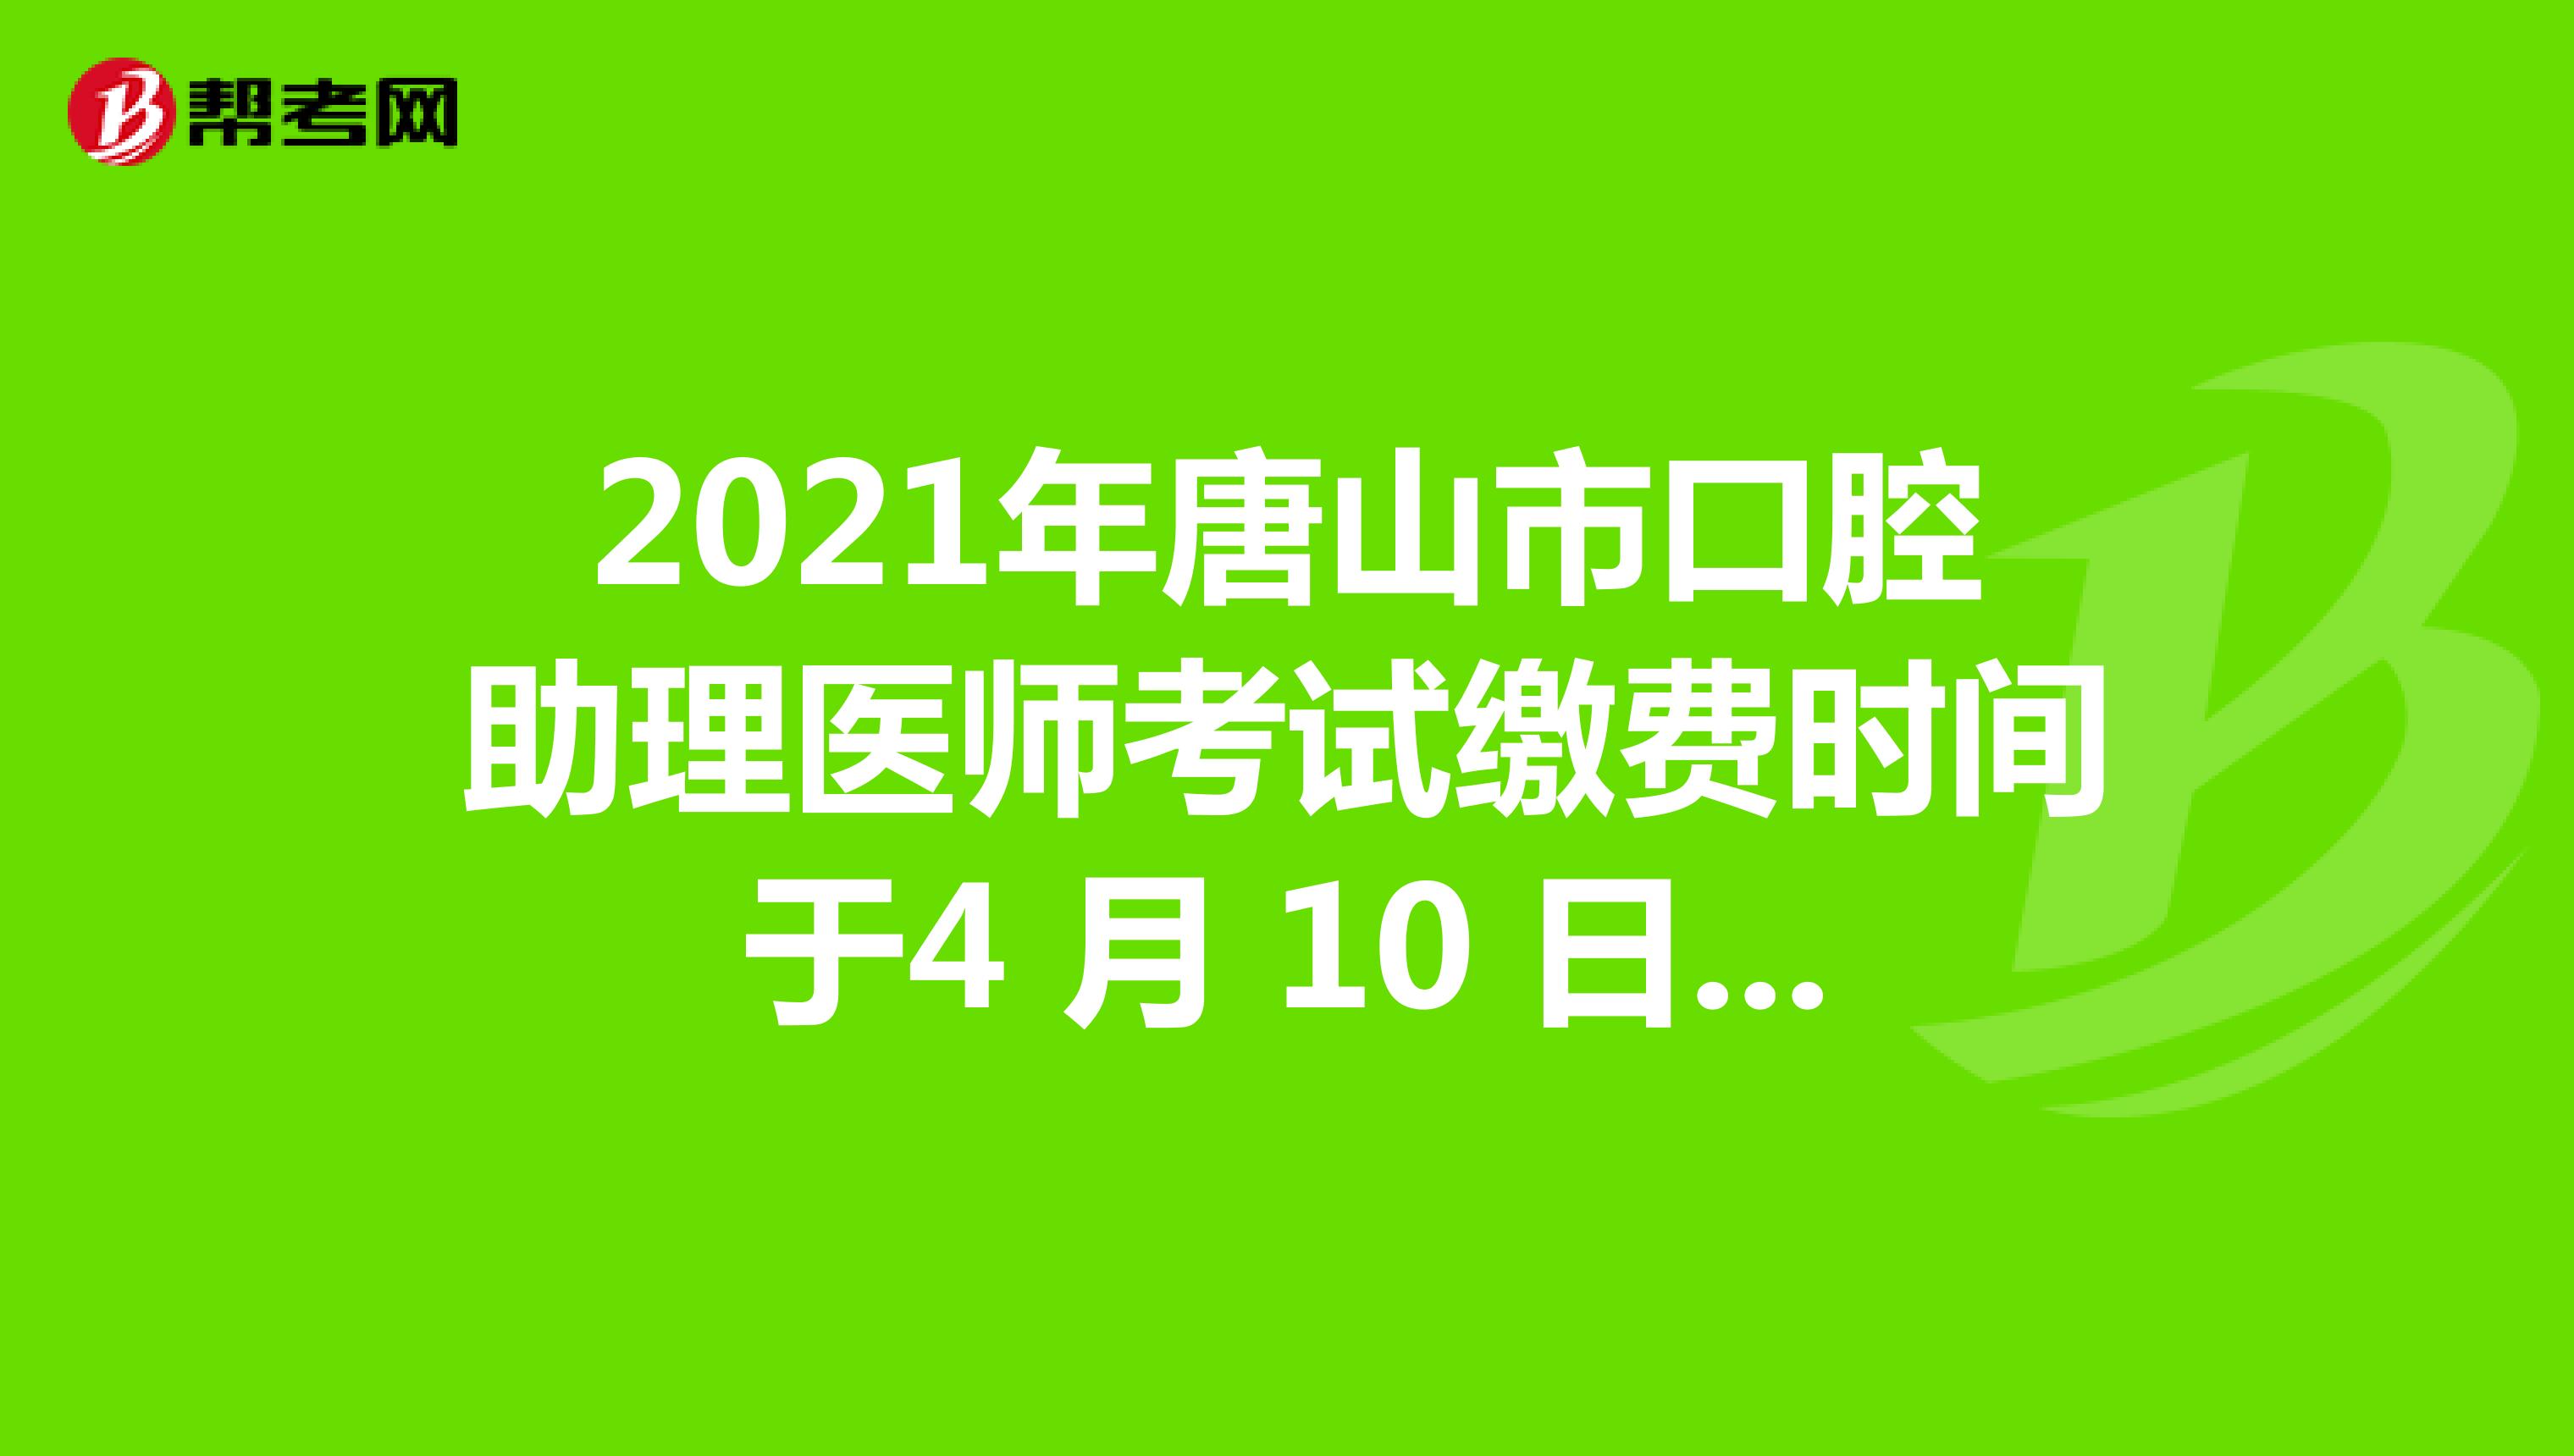 2021年唐山市口腔助理医师考试缴费时间于4 月 10 日截止